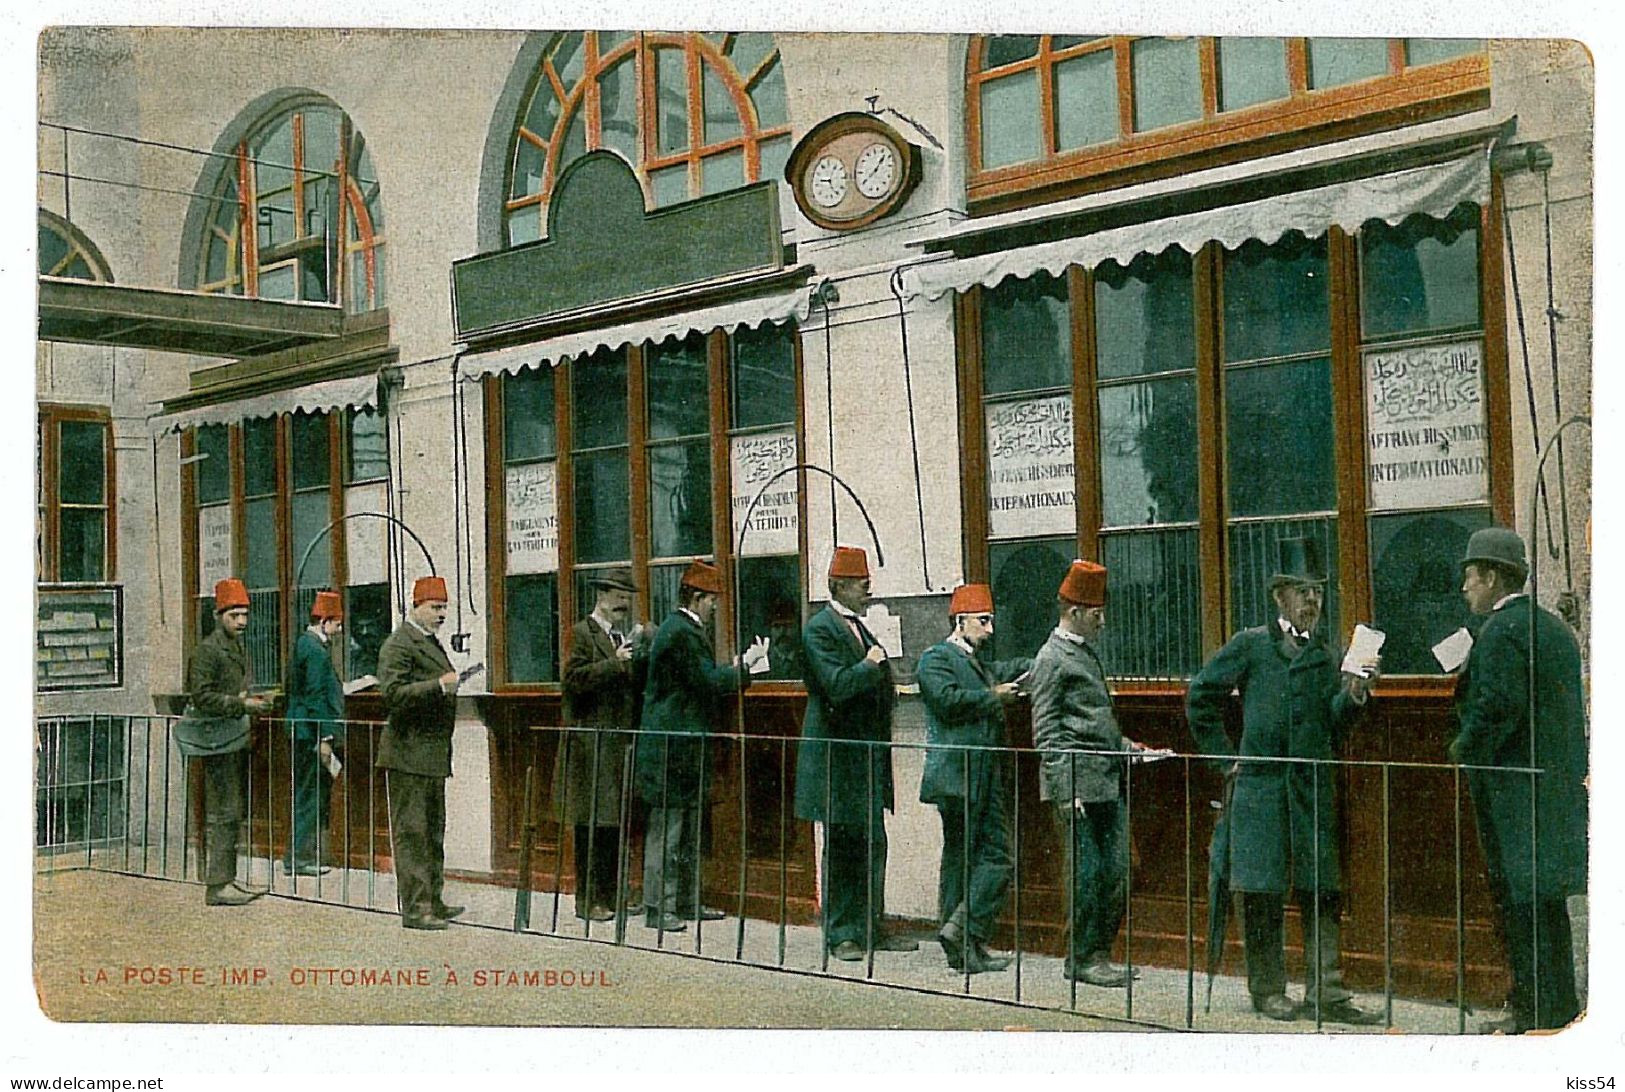 TR 13 - 7819 ISTAMBUL, Turkey, Post OFFICE - Old Postcard - Unused - Turquie